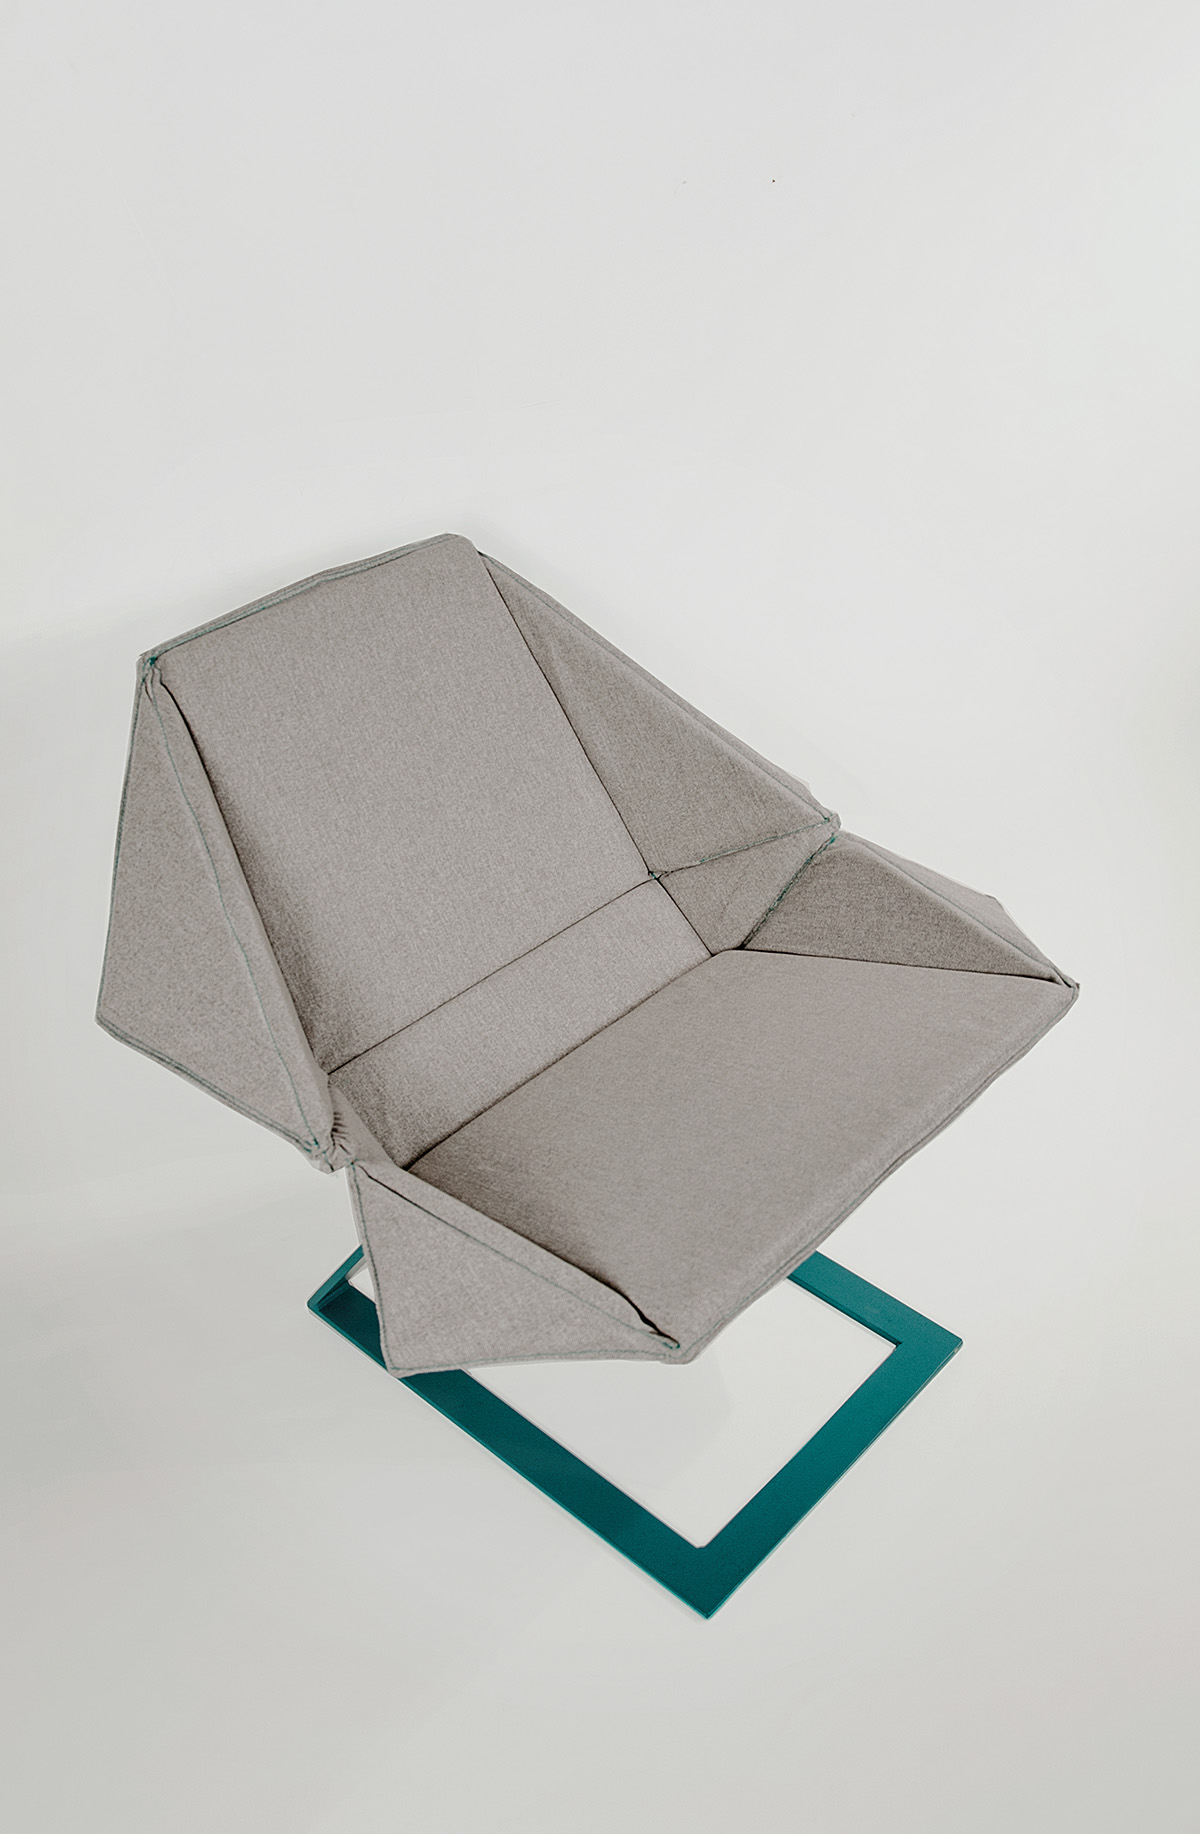 chair  Folding  POrtable seat seating sit minimal furniture